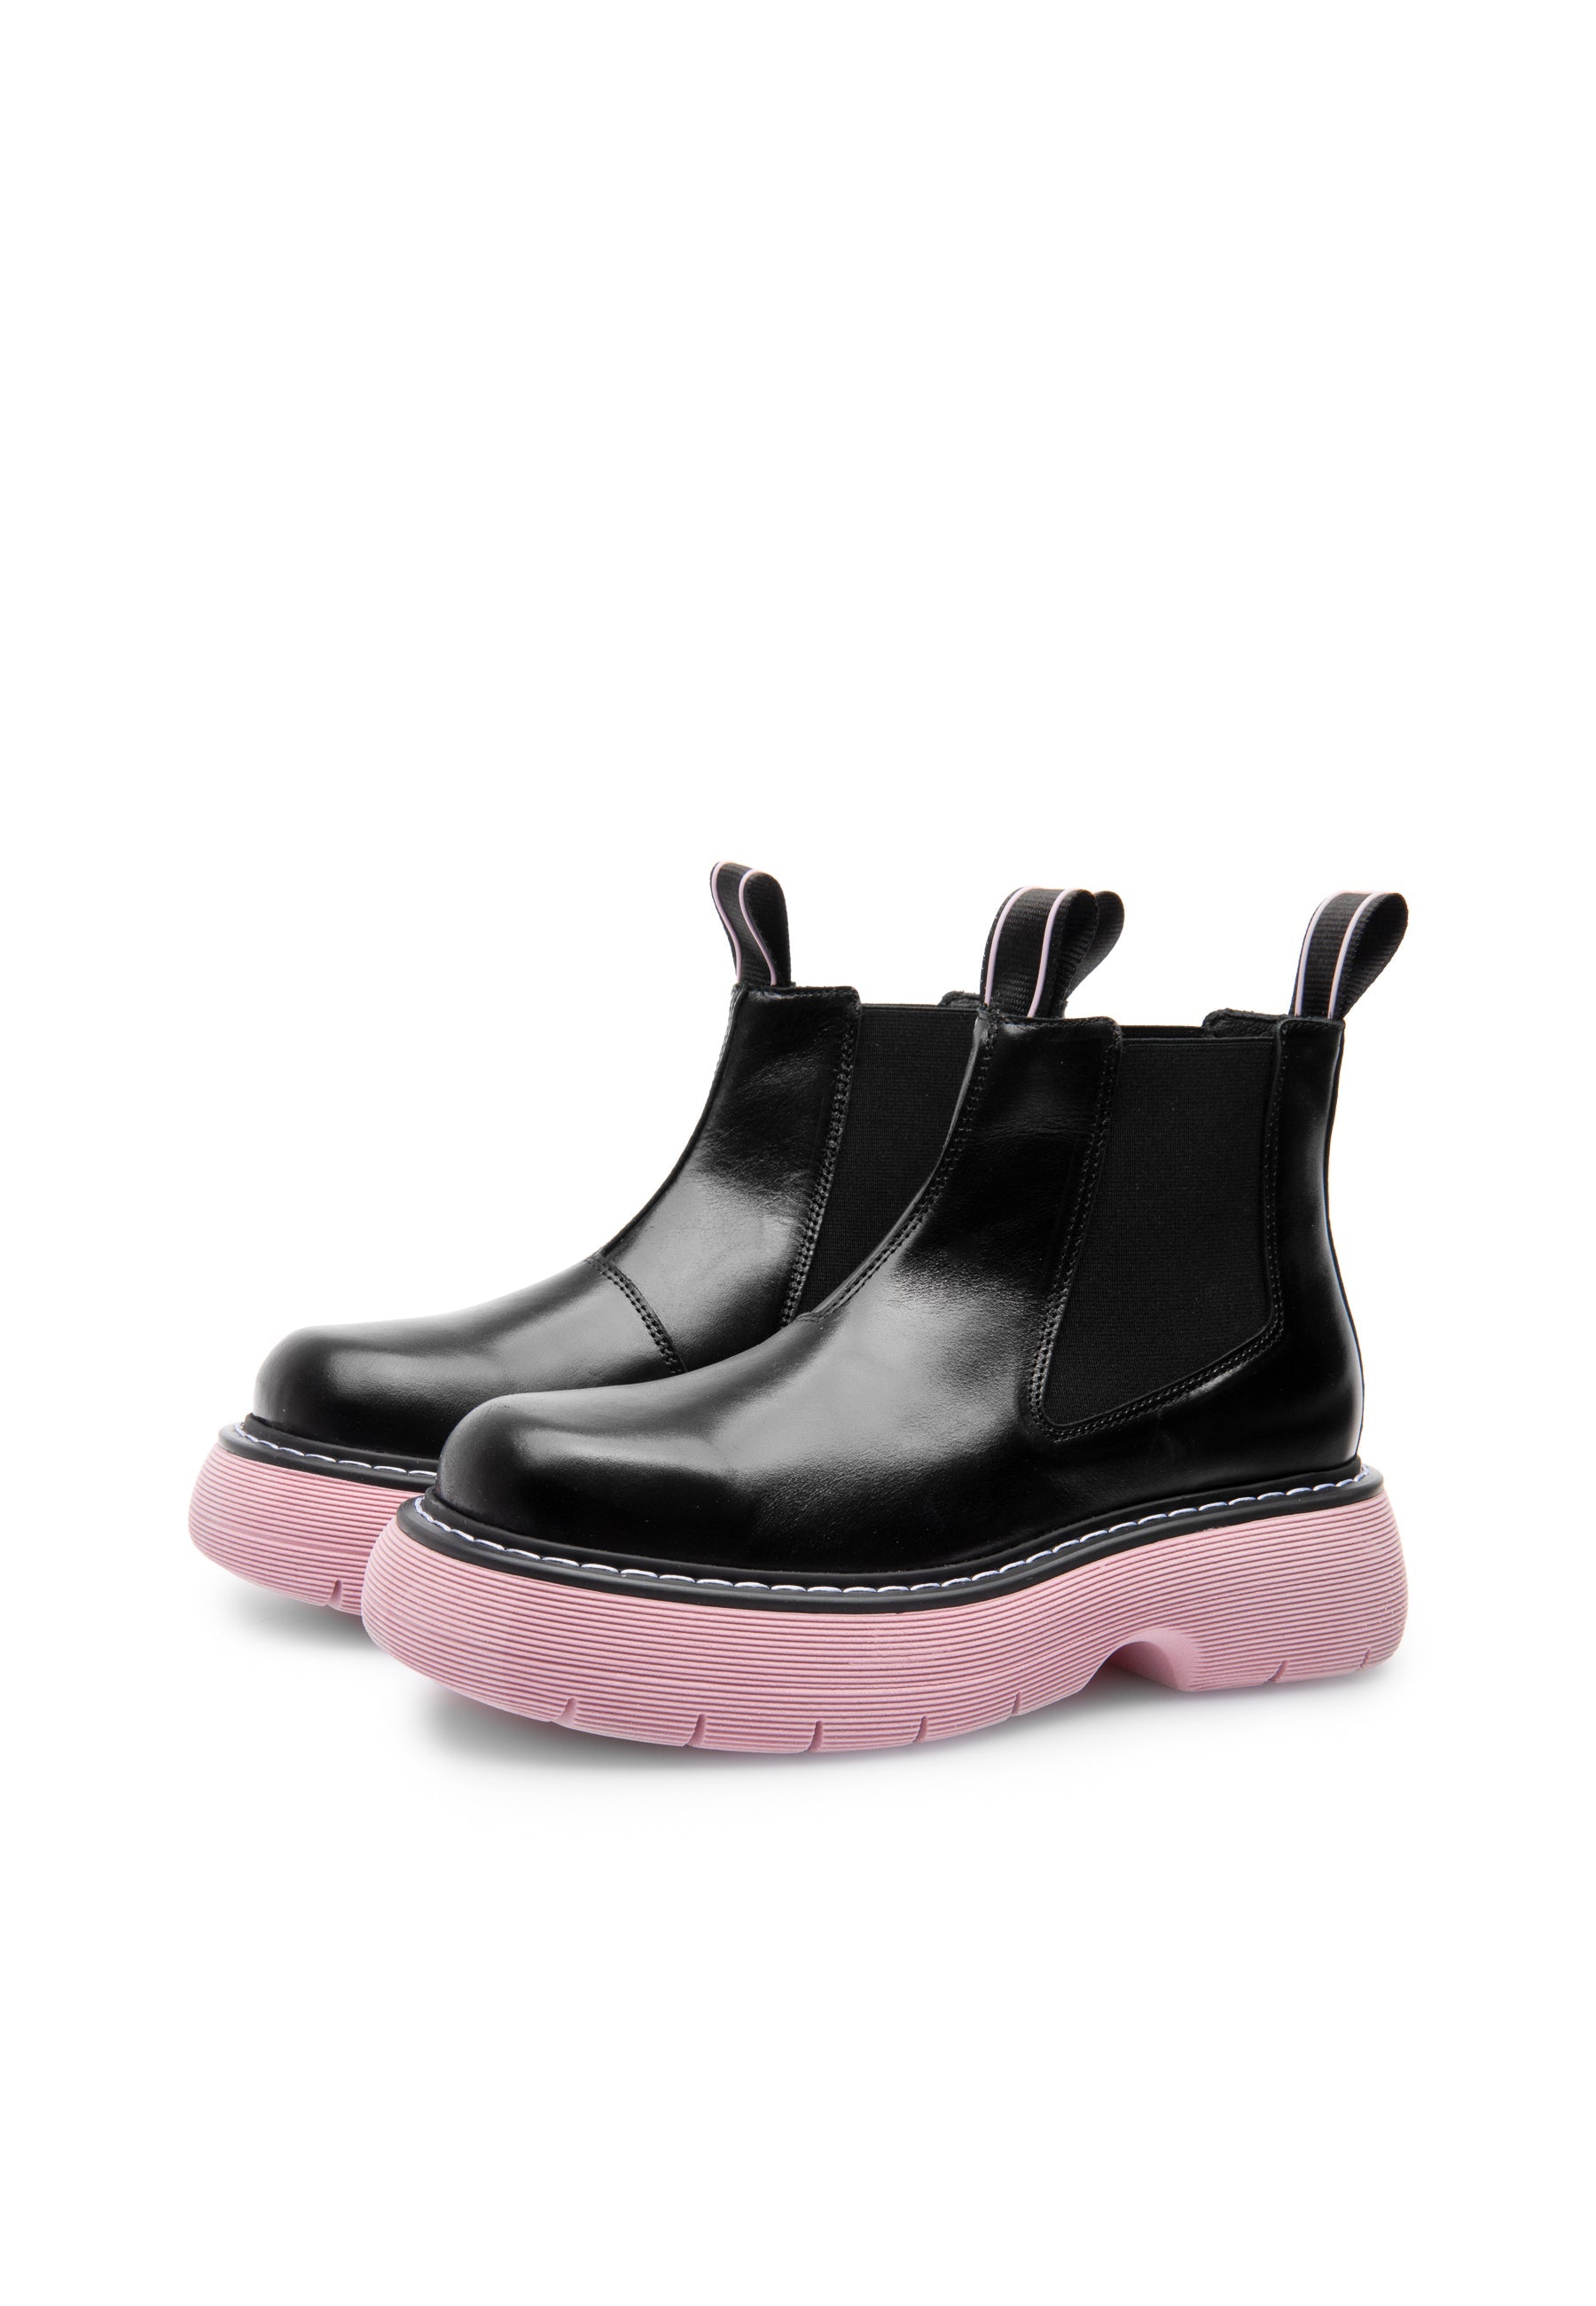 Ella Black Pink Leather Chelsea Boots LAST1529 - 2